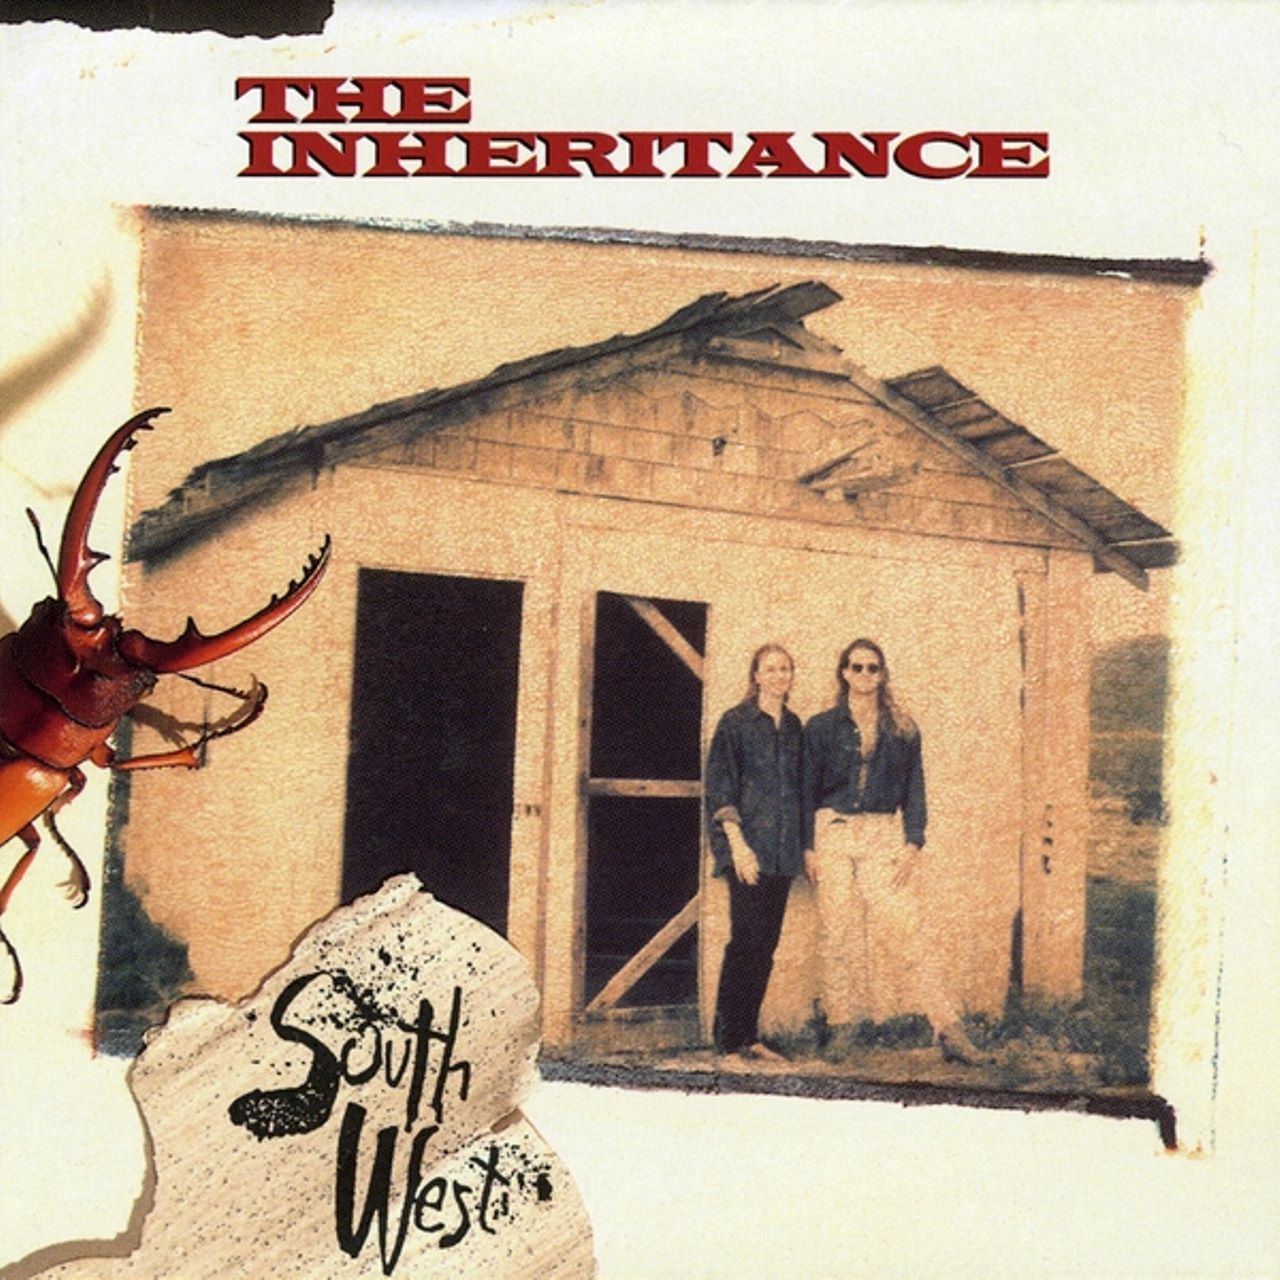 Inheritance - Southwest cover album